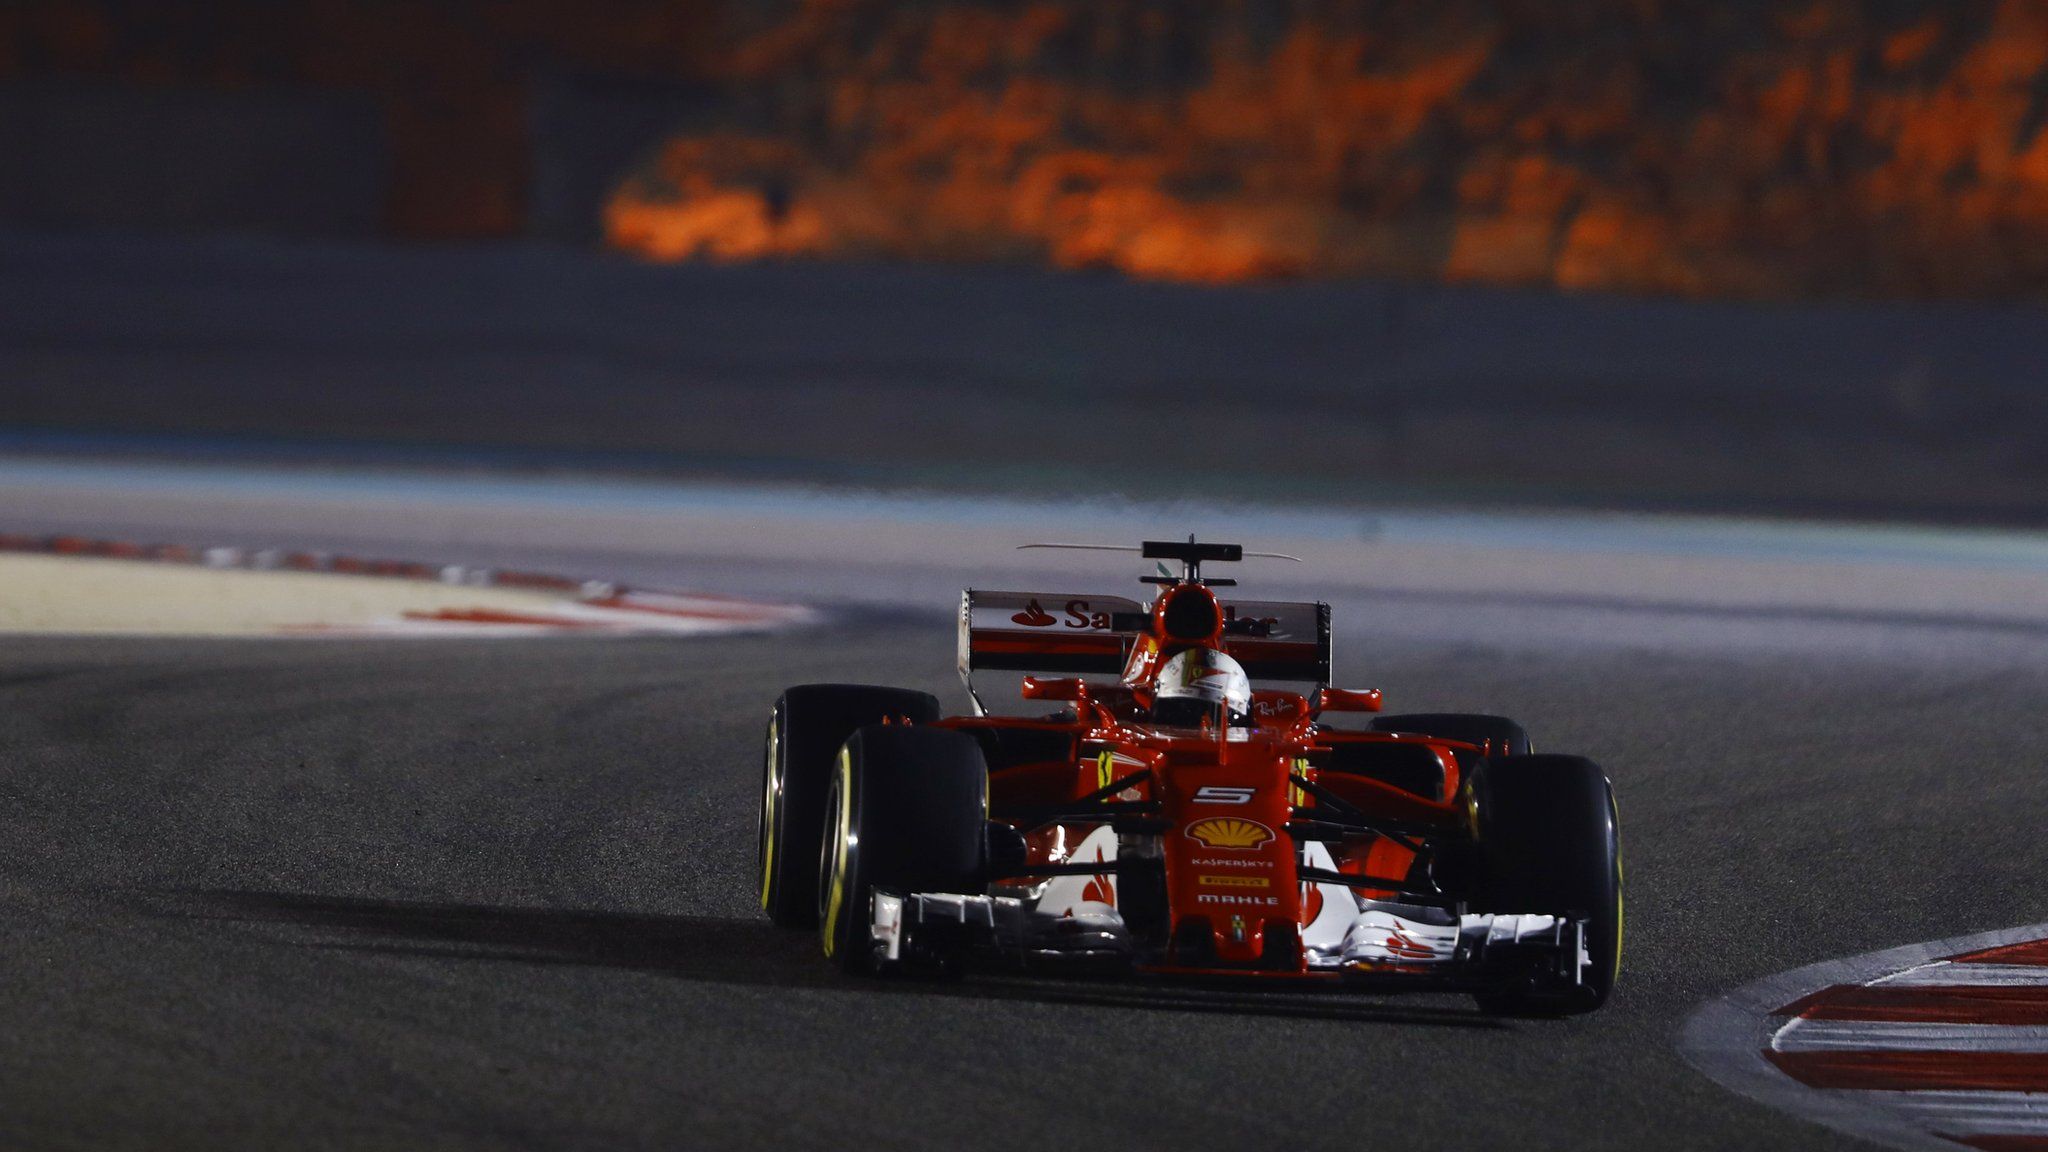 Ferrari's Sebastian Vettel